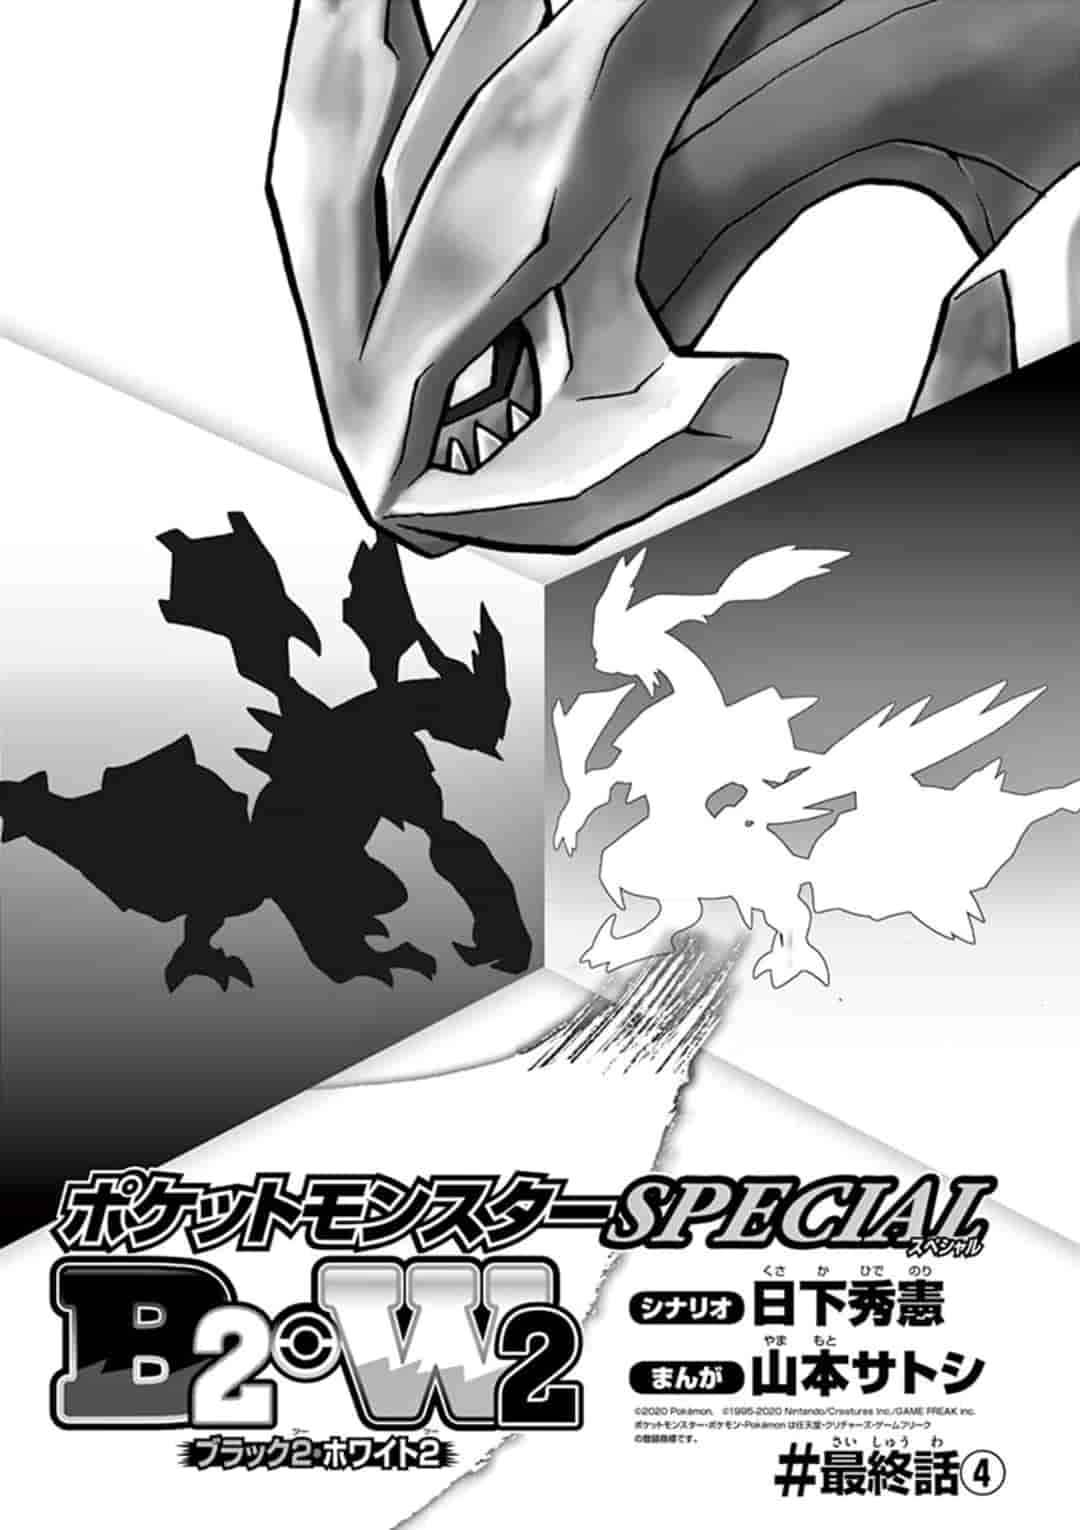 Pokémon Special Ch. 548.4 B2W2 Final Chapter #4